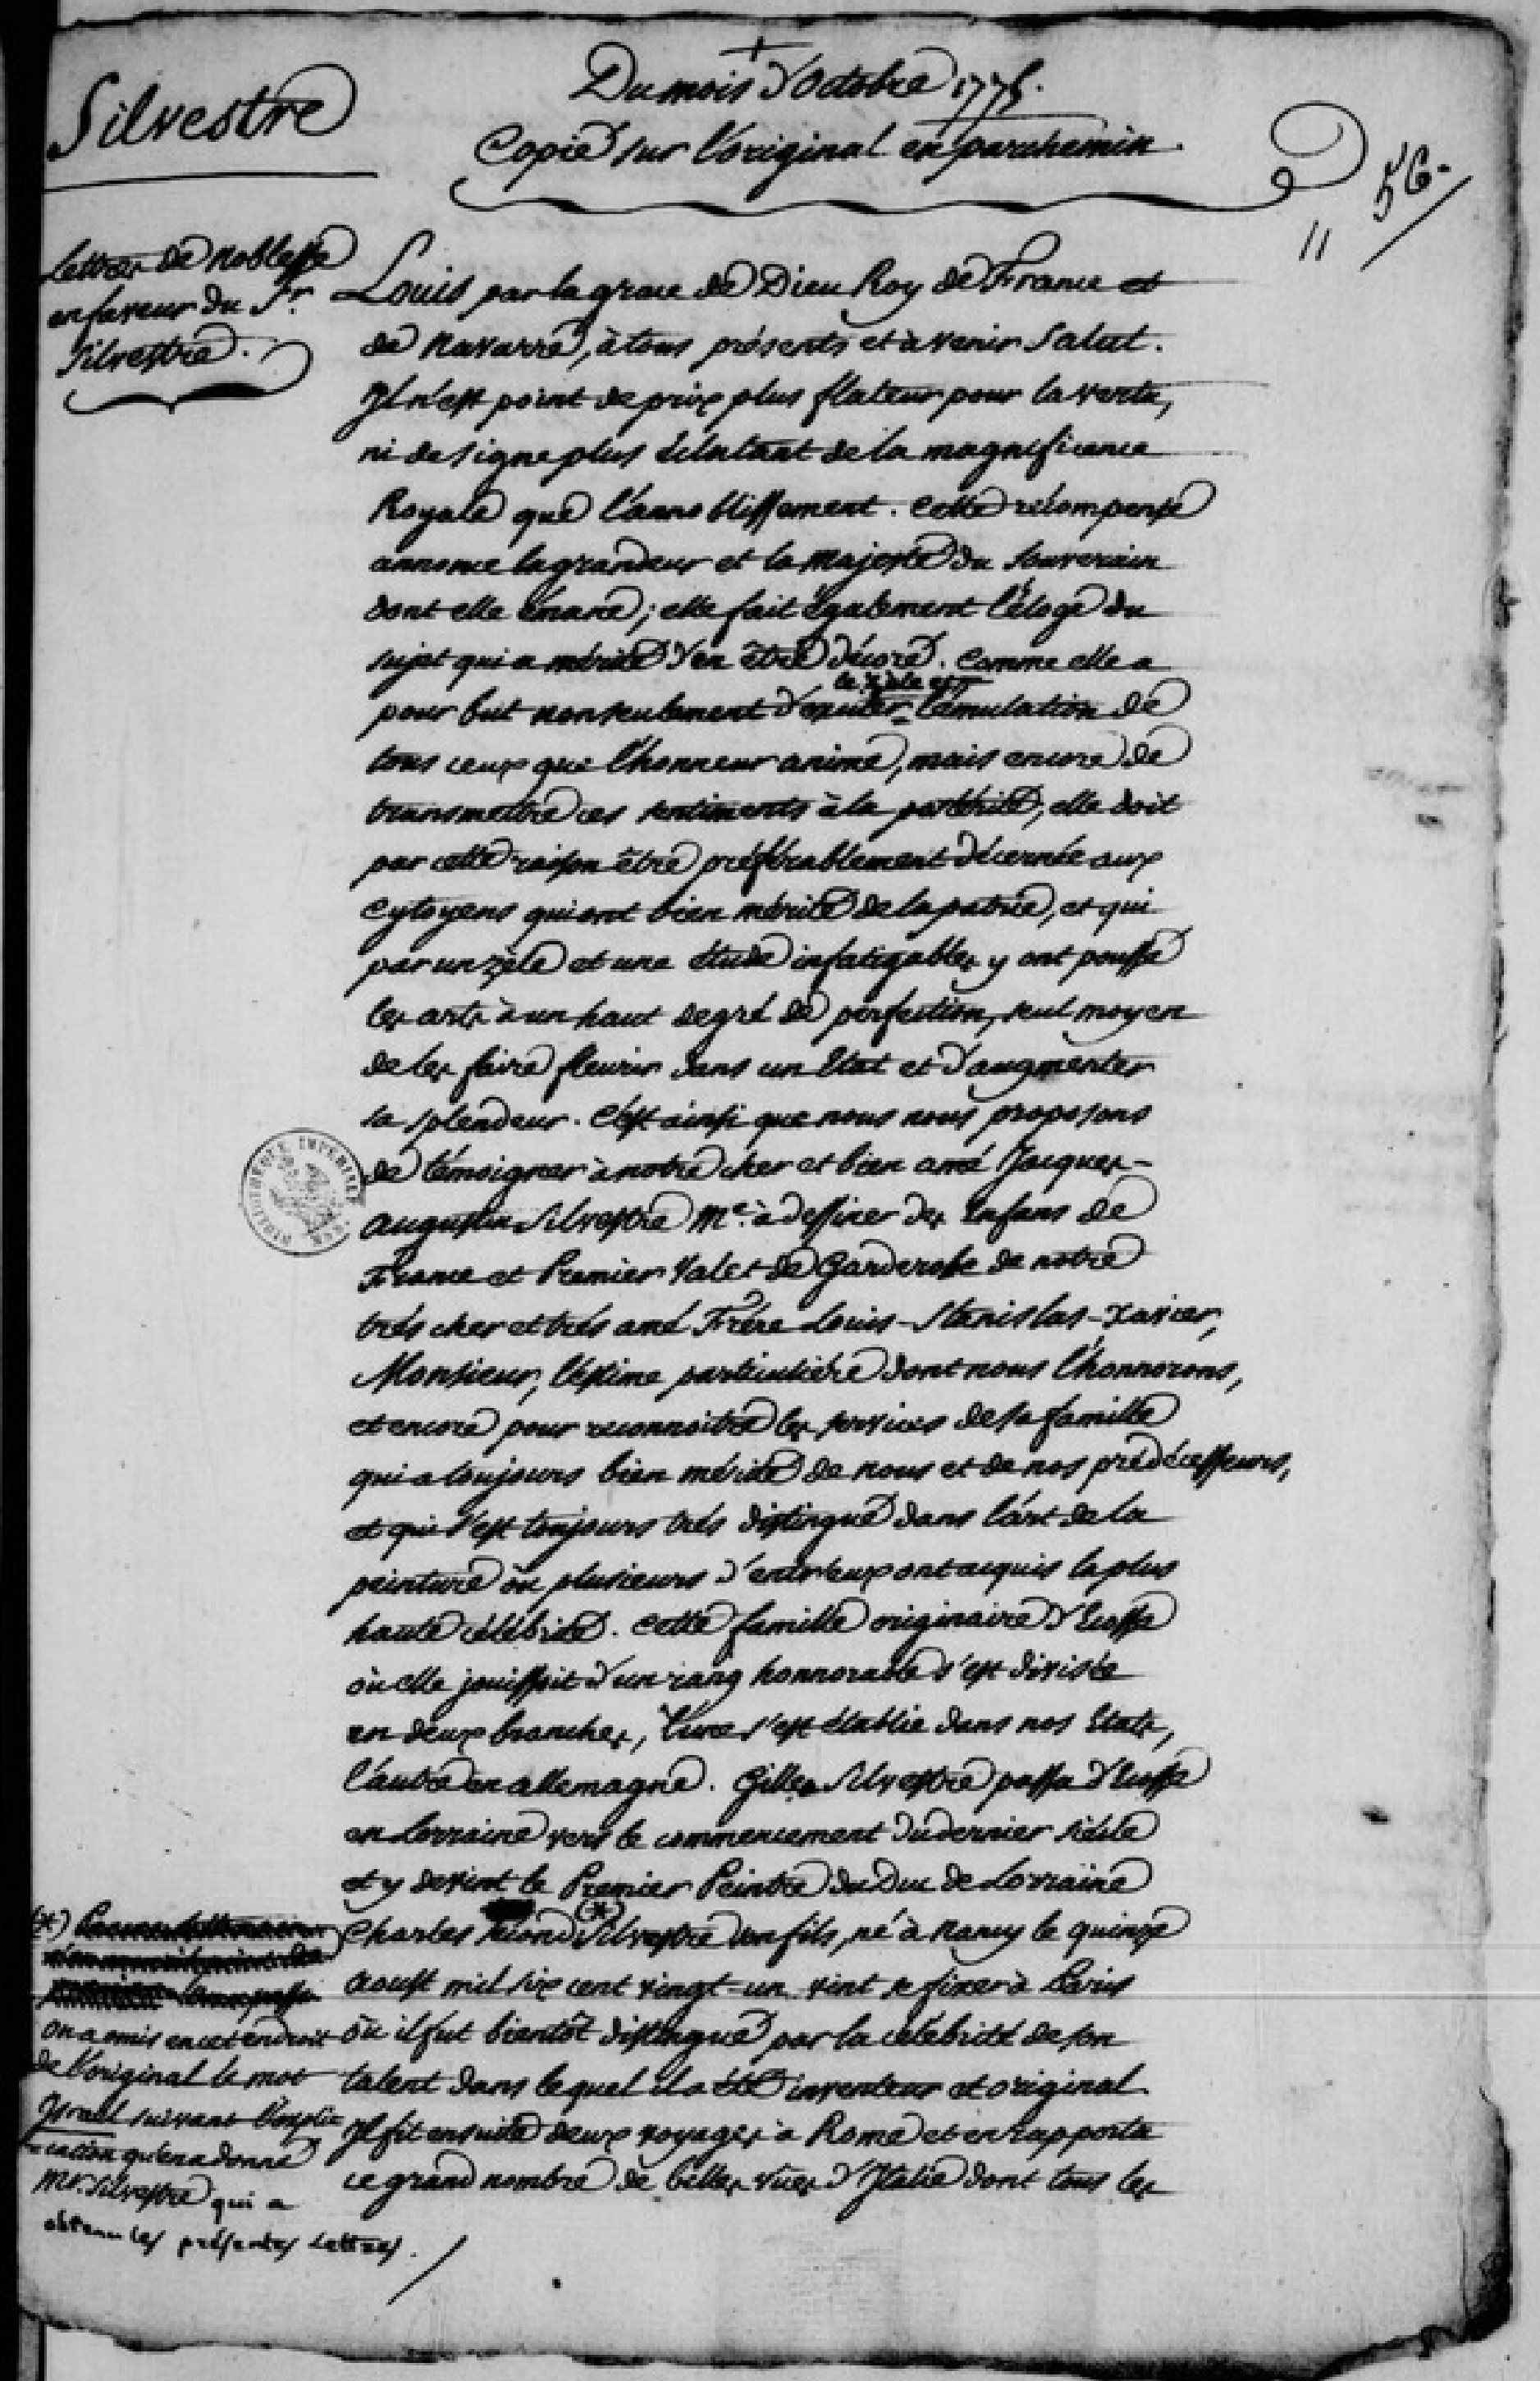  Lettres de noblesse pour Jacques Augustin de Silvestre - Page 1